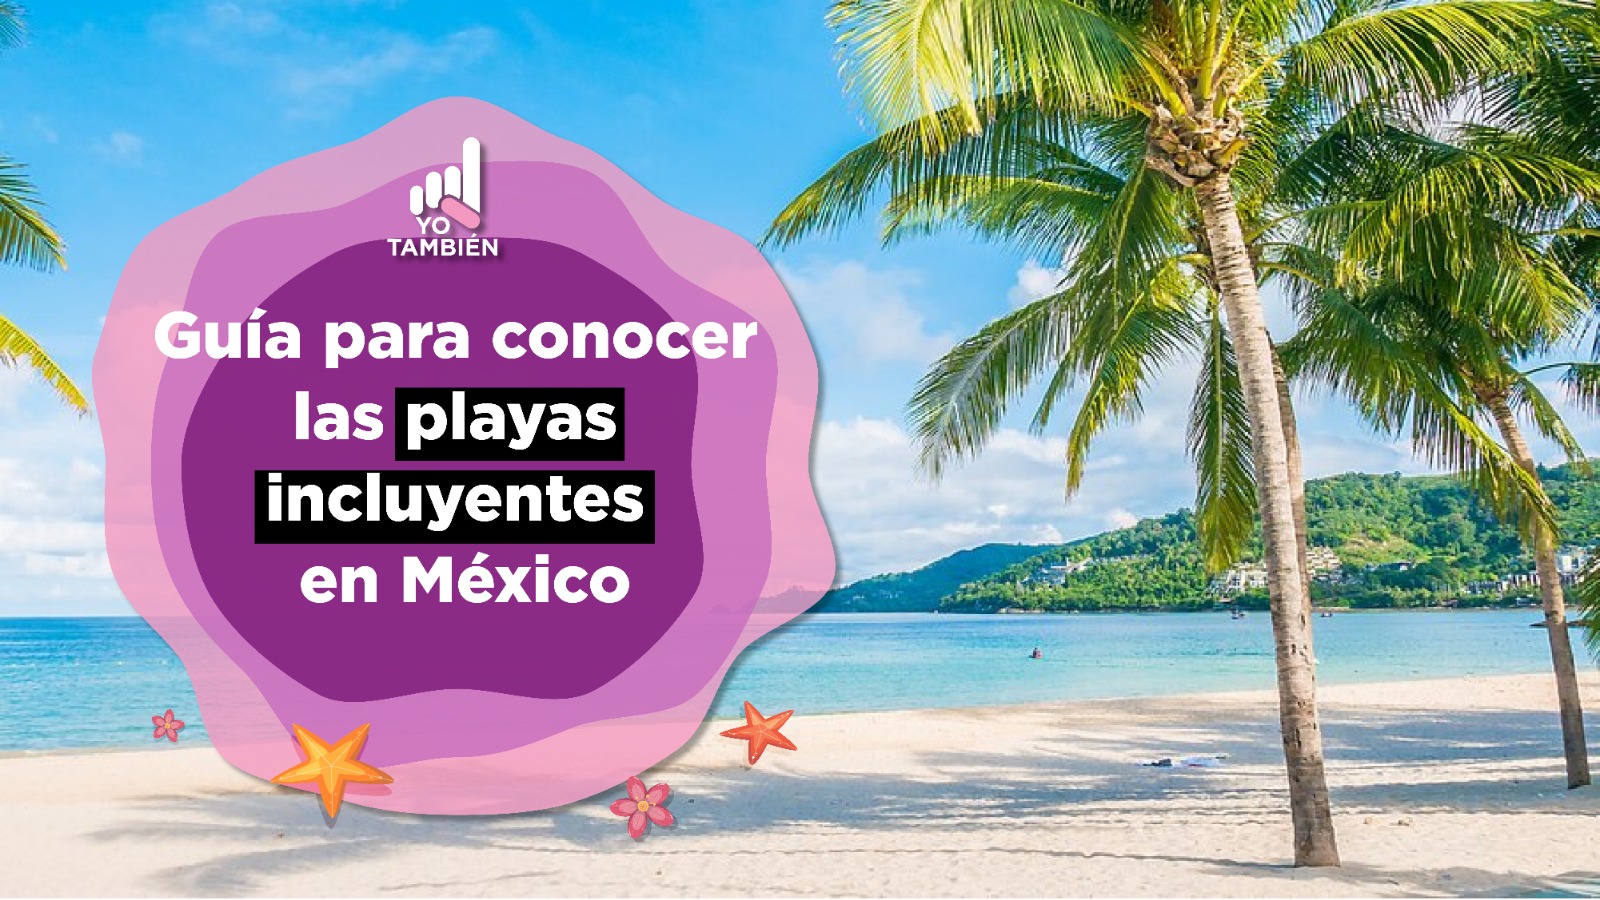 Fotografía de una playa. A la izquierda una ilustración rosa en la que se lee Guía para conocer las playas incluyentes en México.